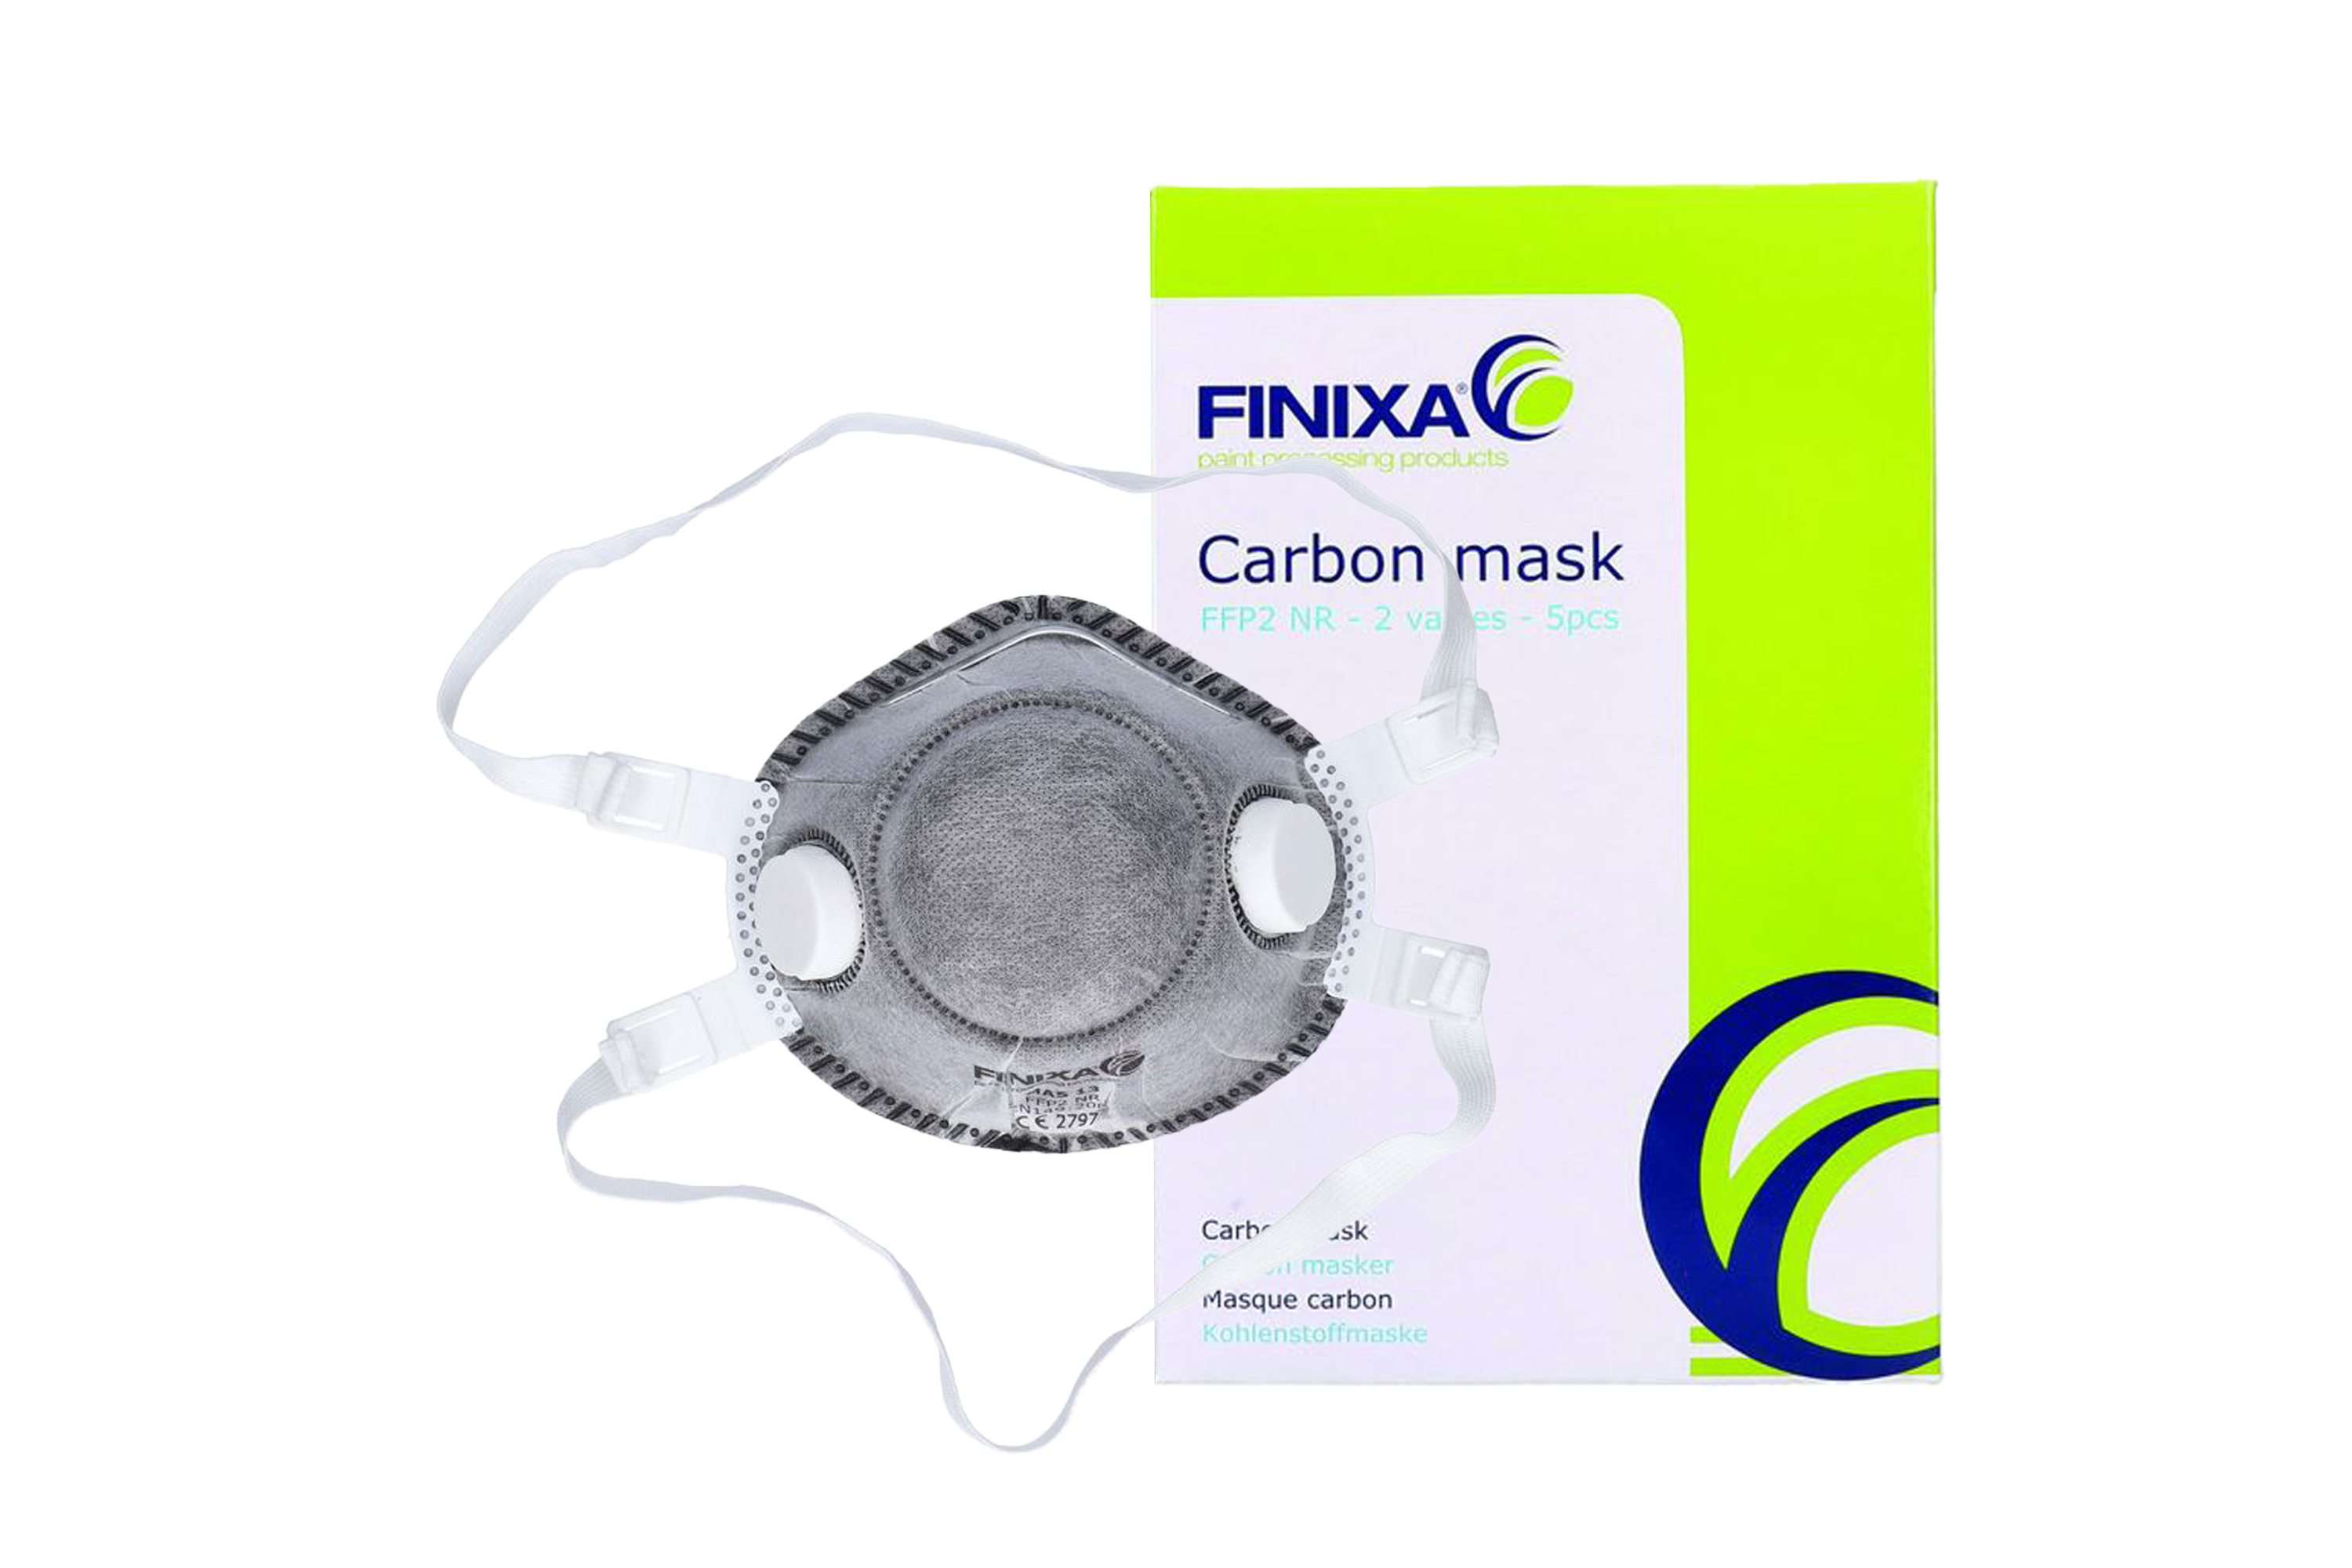 Abbildung Finixa FFP2 Maske mit Kohlenstofffilter und Verpackung.